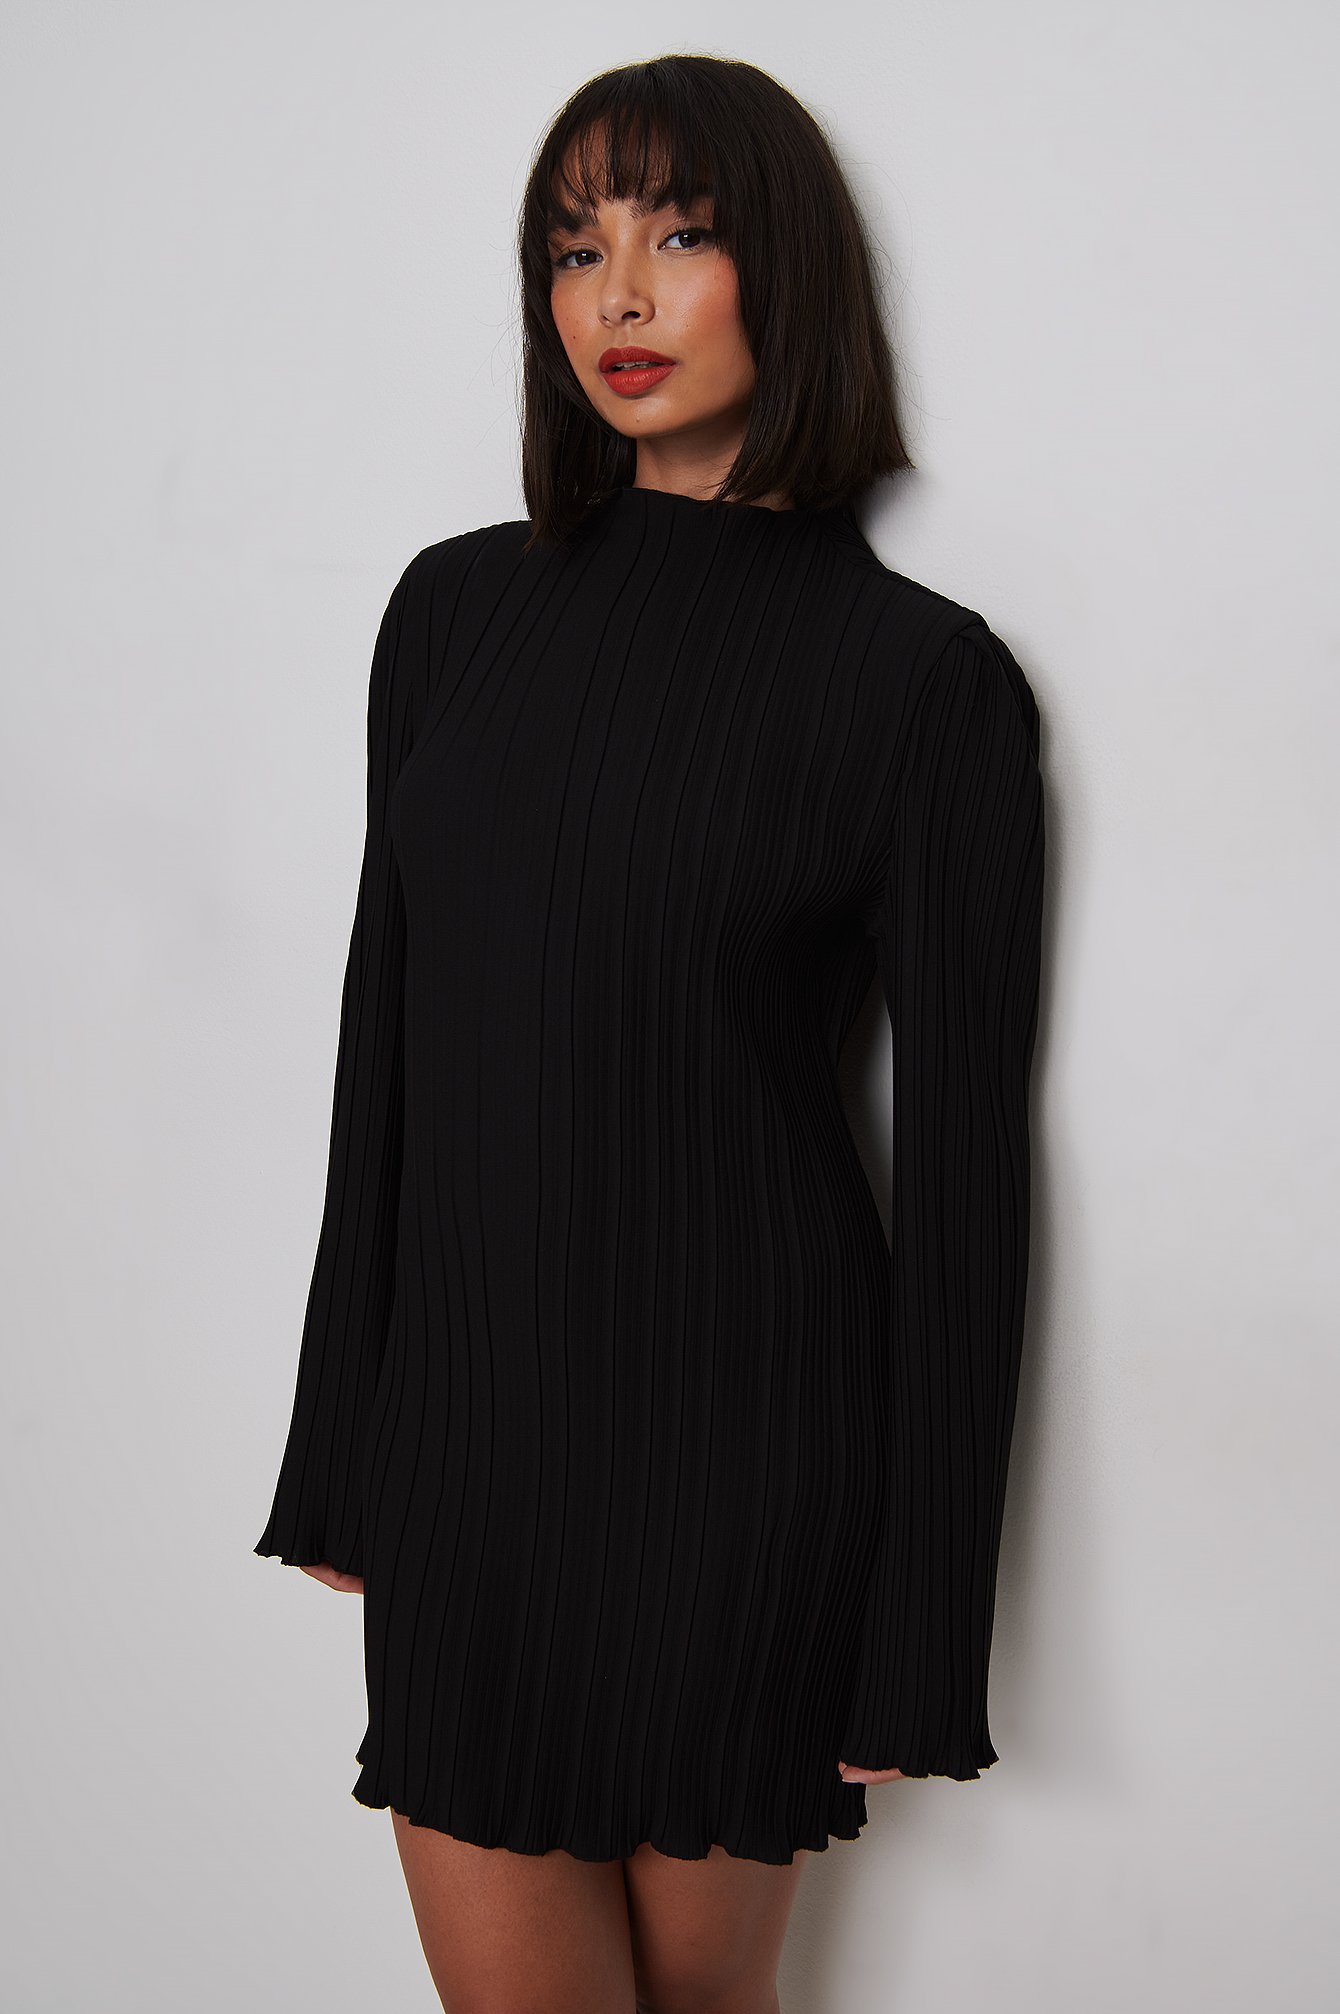 Black Texturiertes Kleid Mit Untergesetzten Schultern